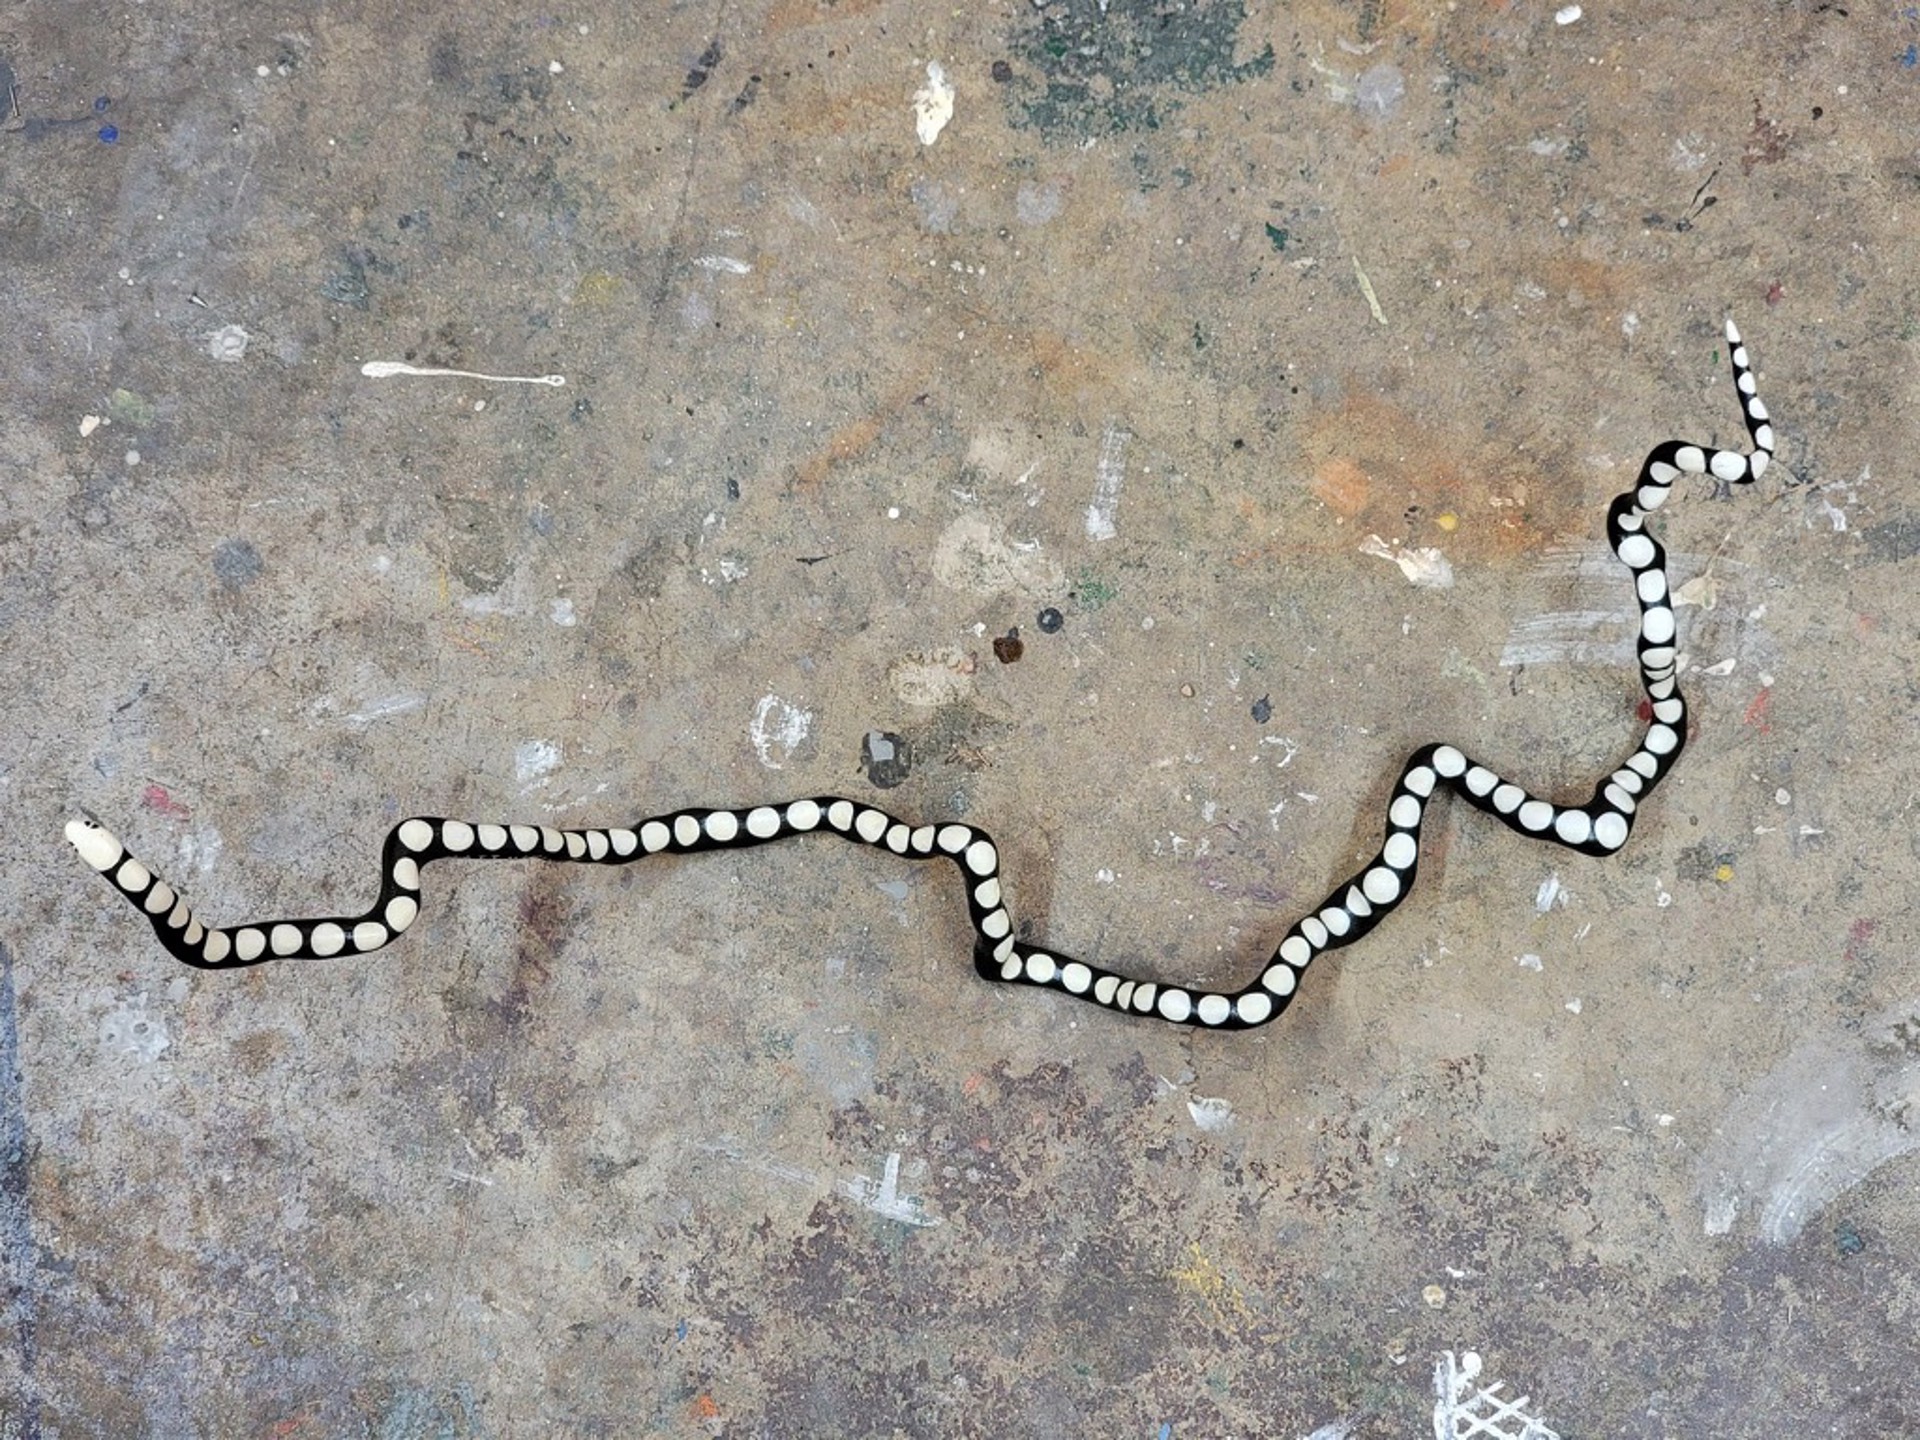 Serpent by Matt Messinger